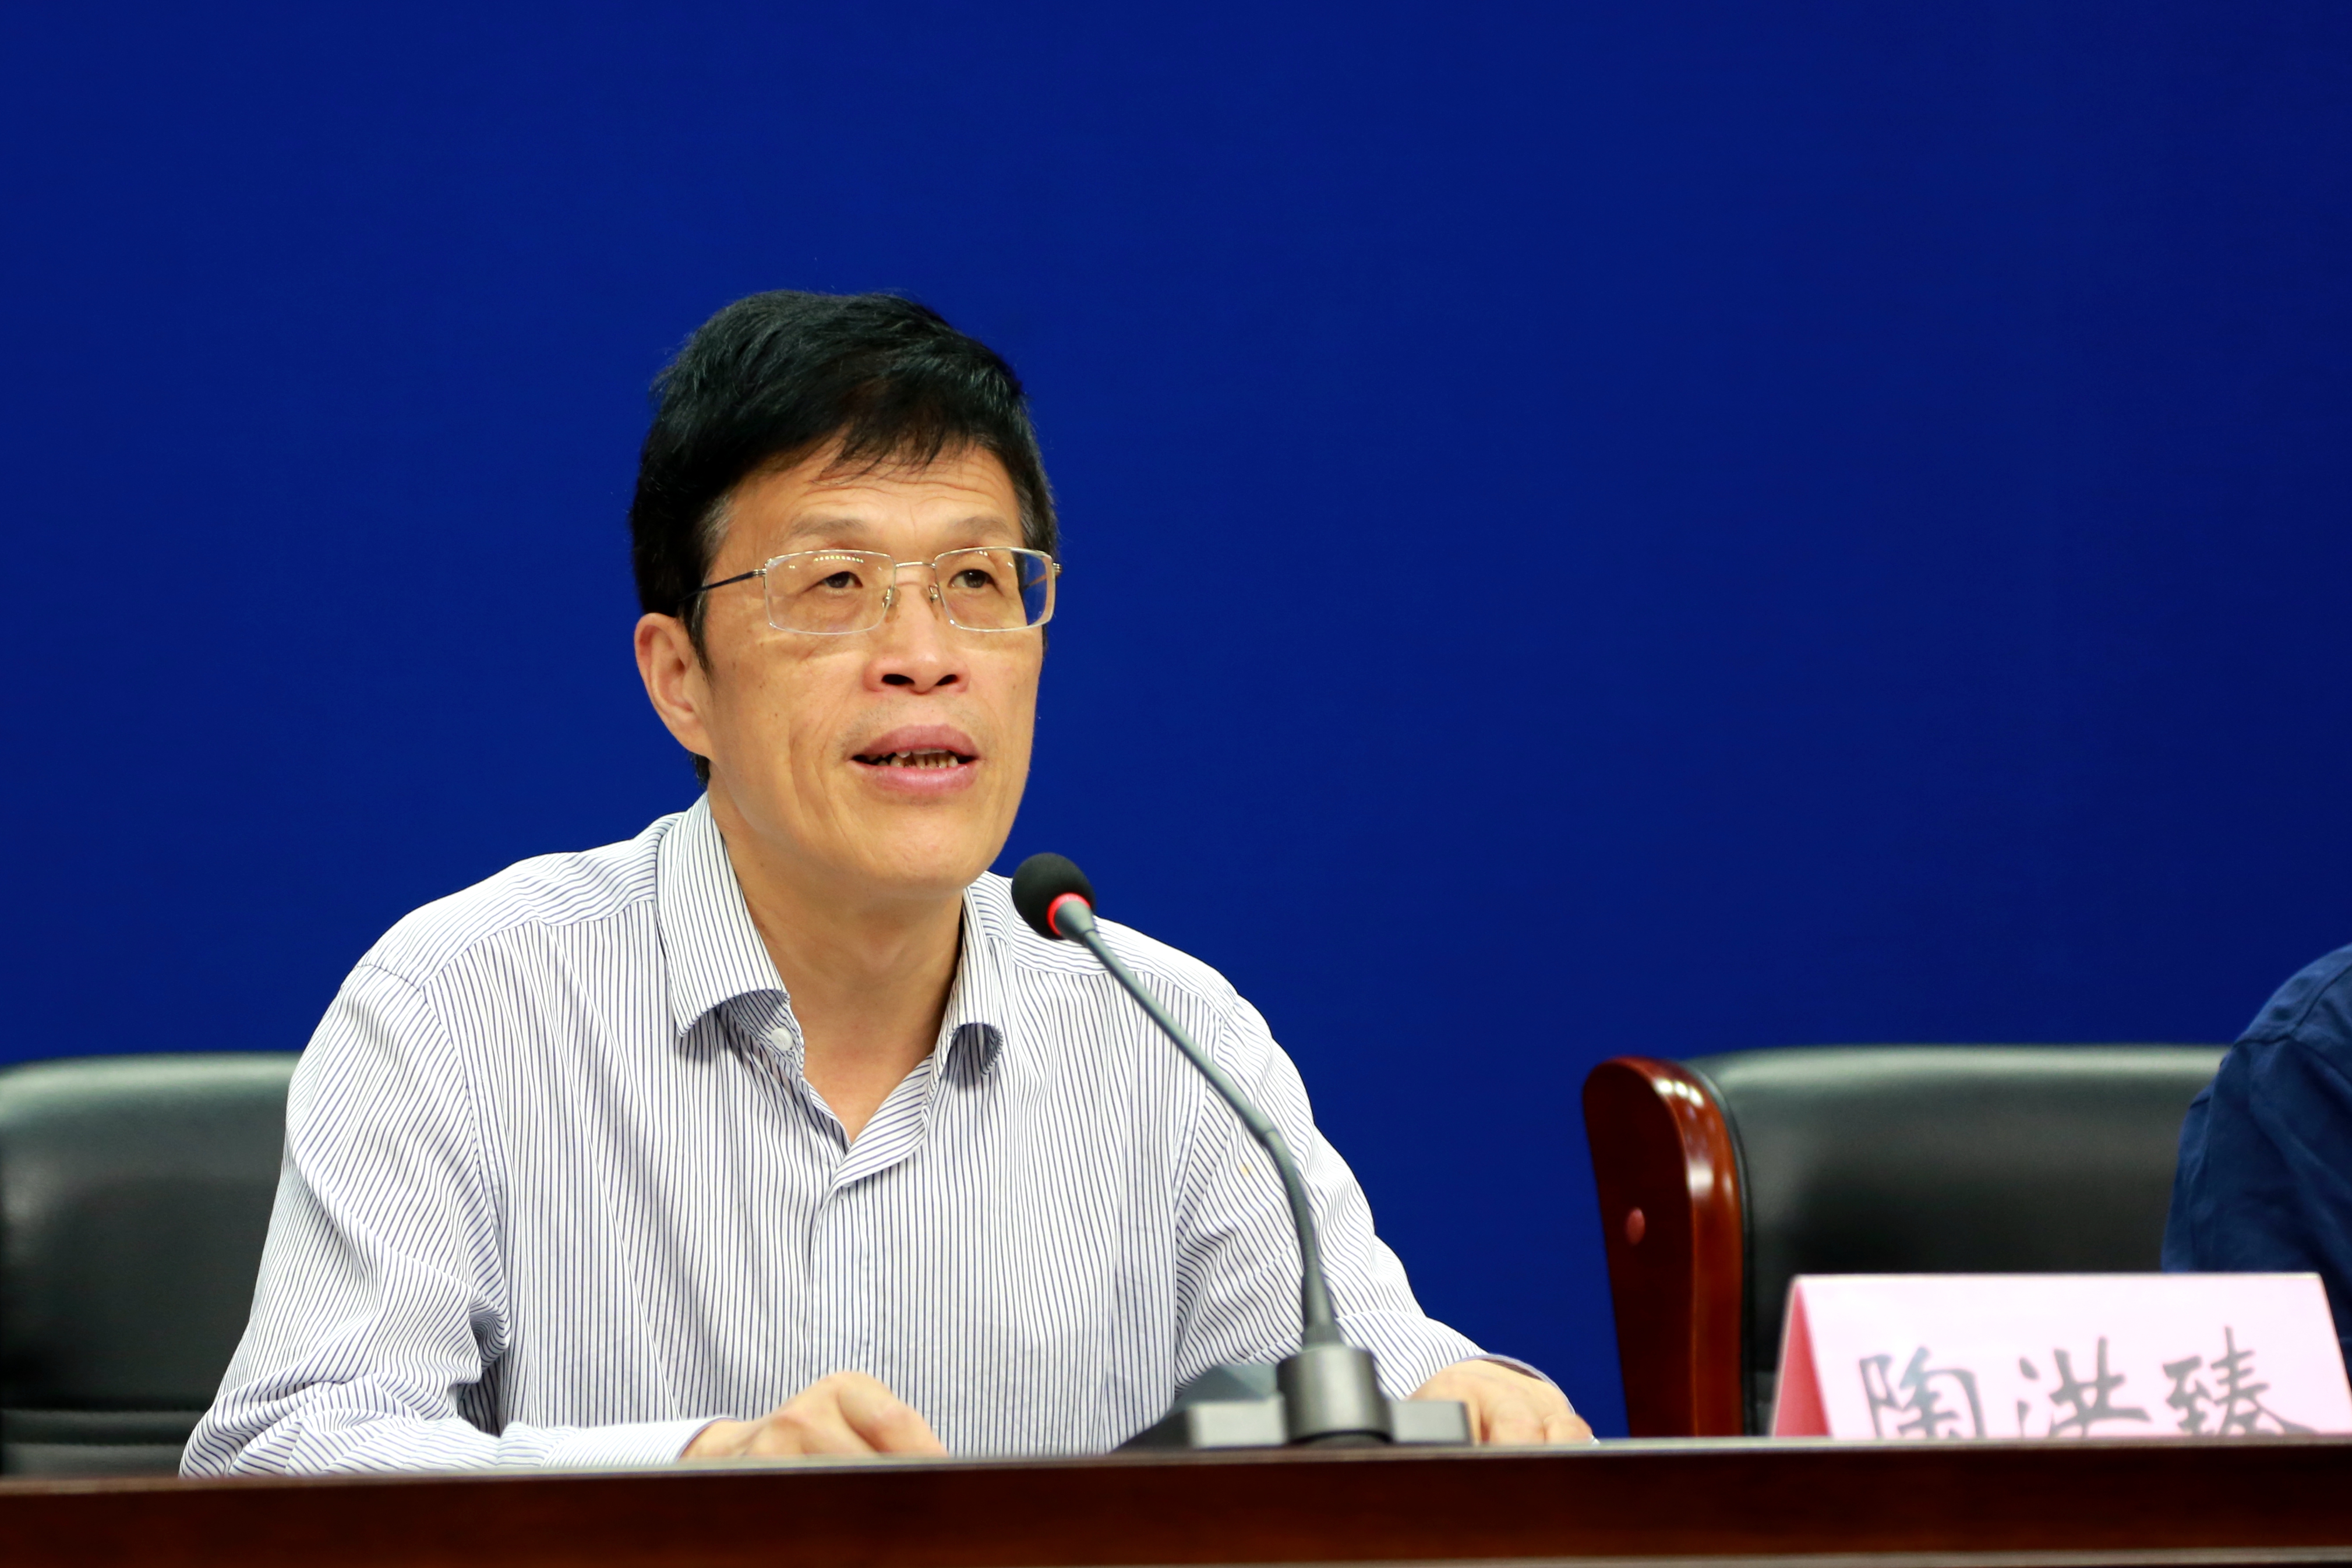 省工商局党组成员、副局长陶洪臻通报相关情况并回答记者提问